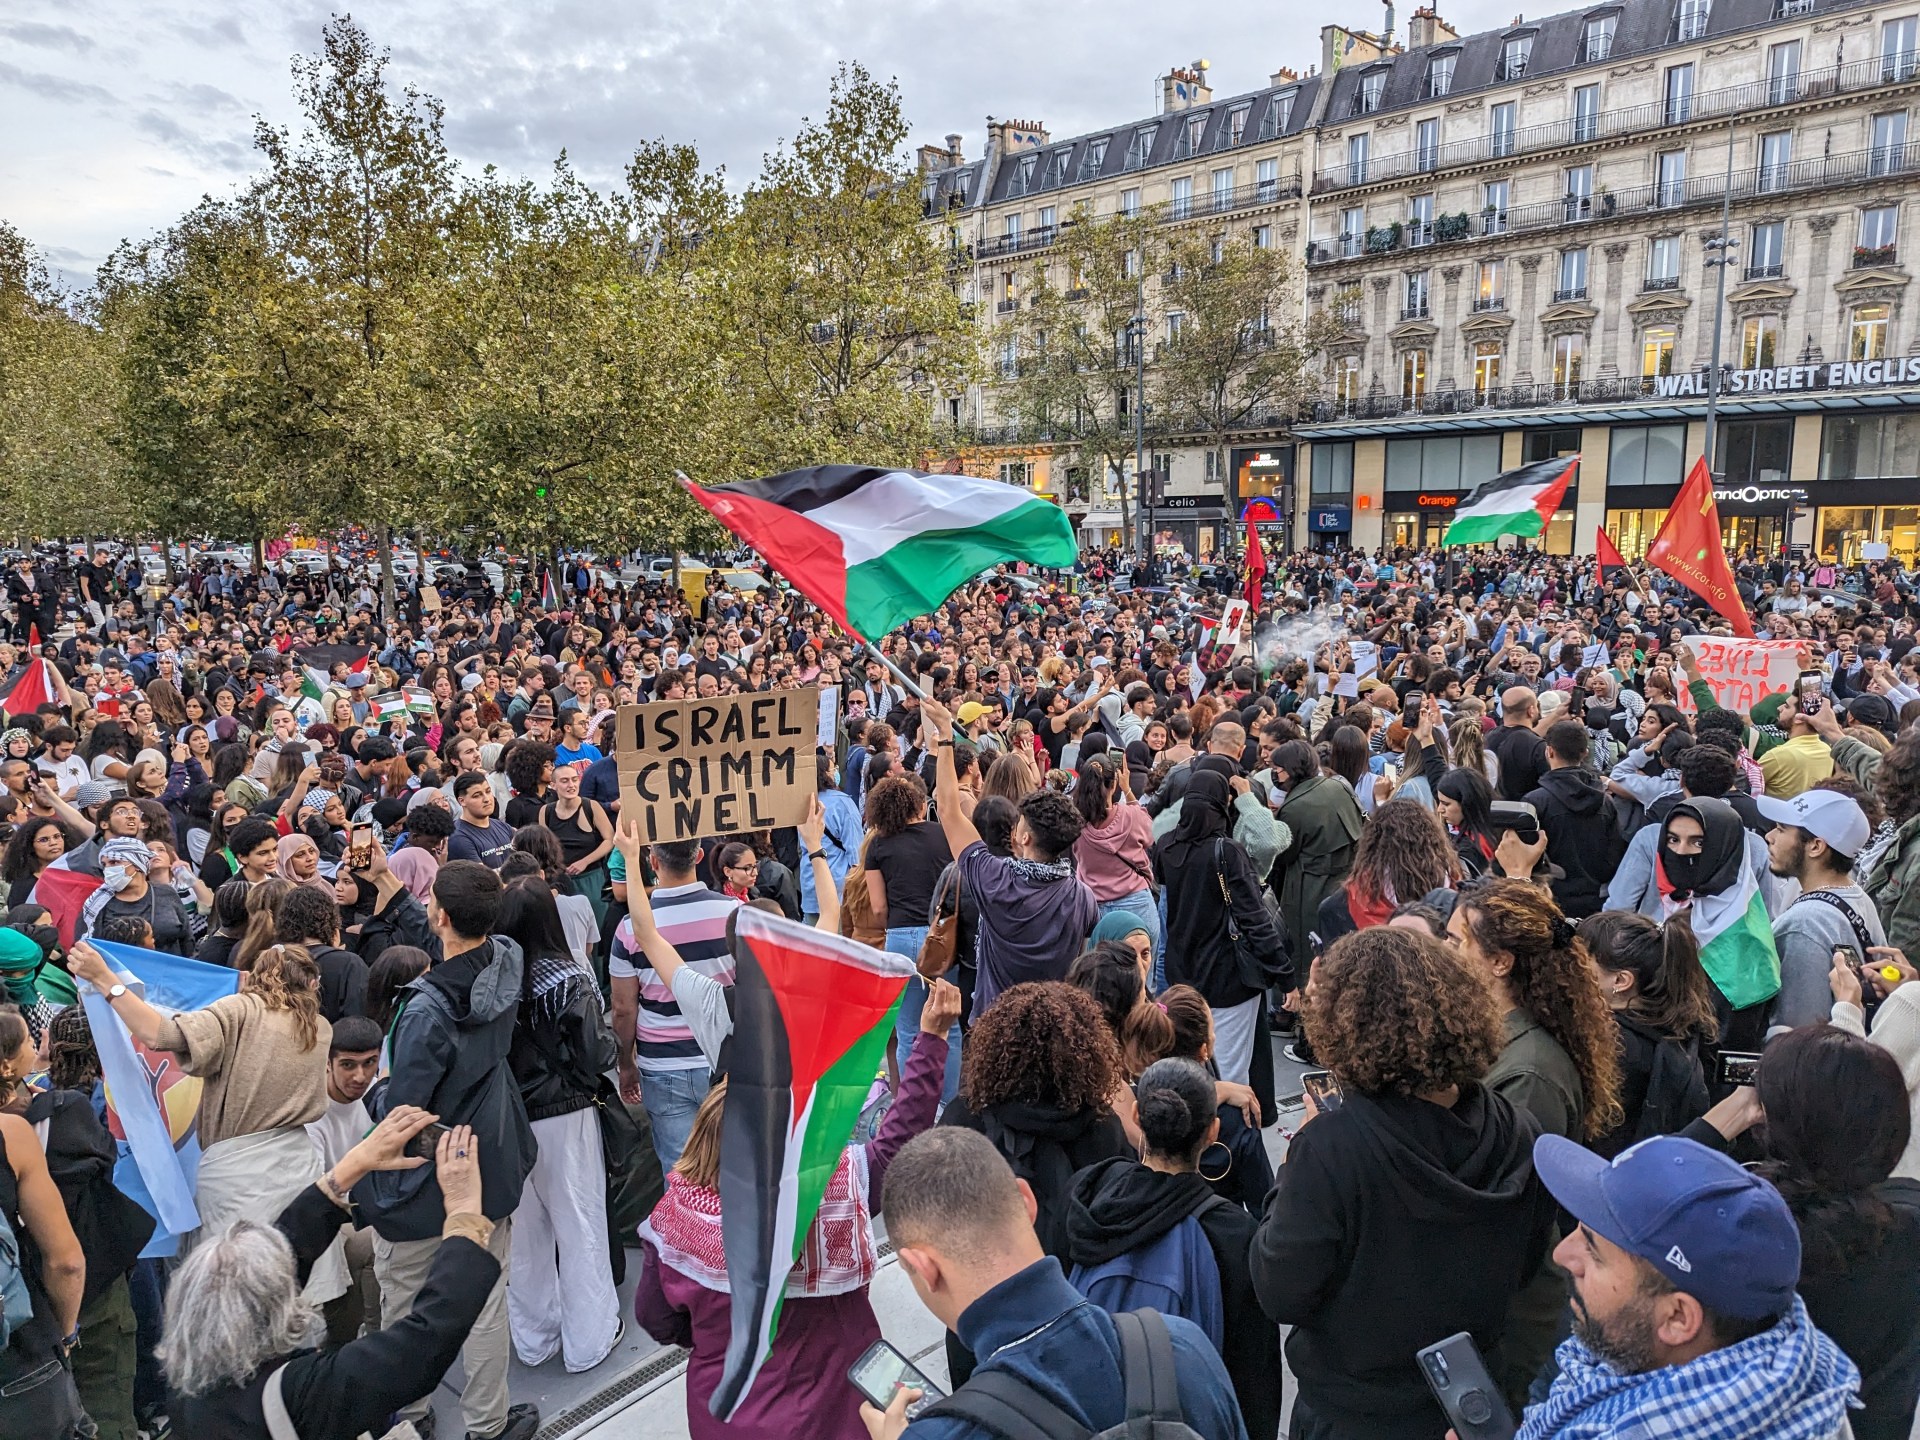 فرنسا تحظر المظاهرات المؤيدة لفلسطين ومحتجون يتحدون | أخبار – البوكس نيوز